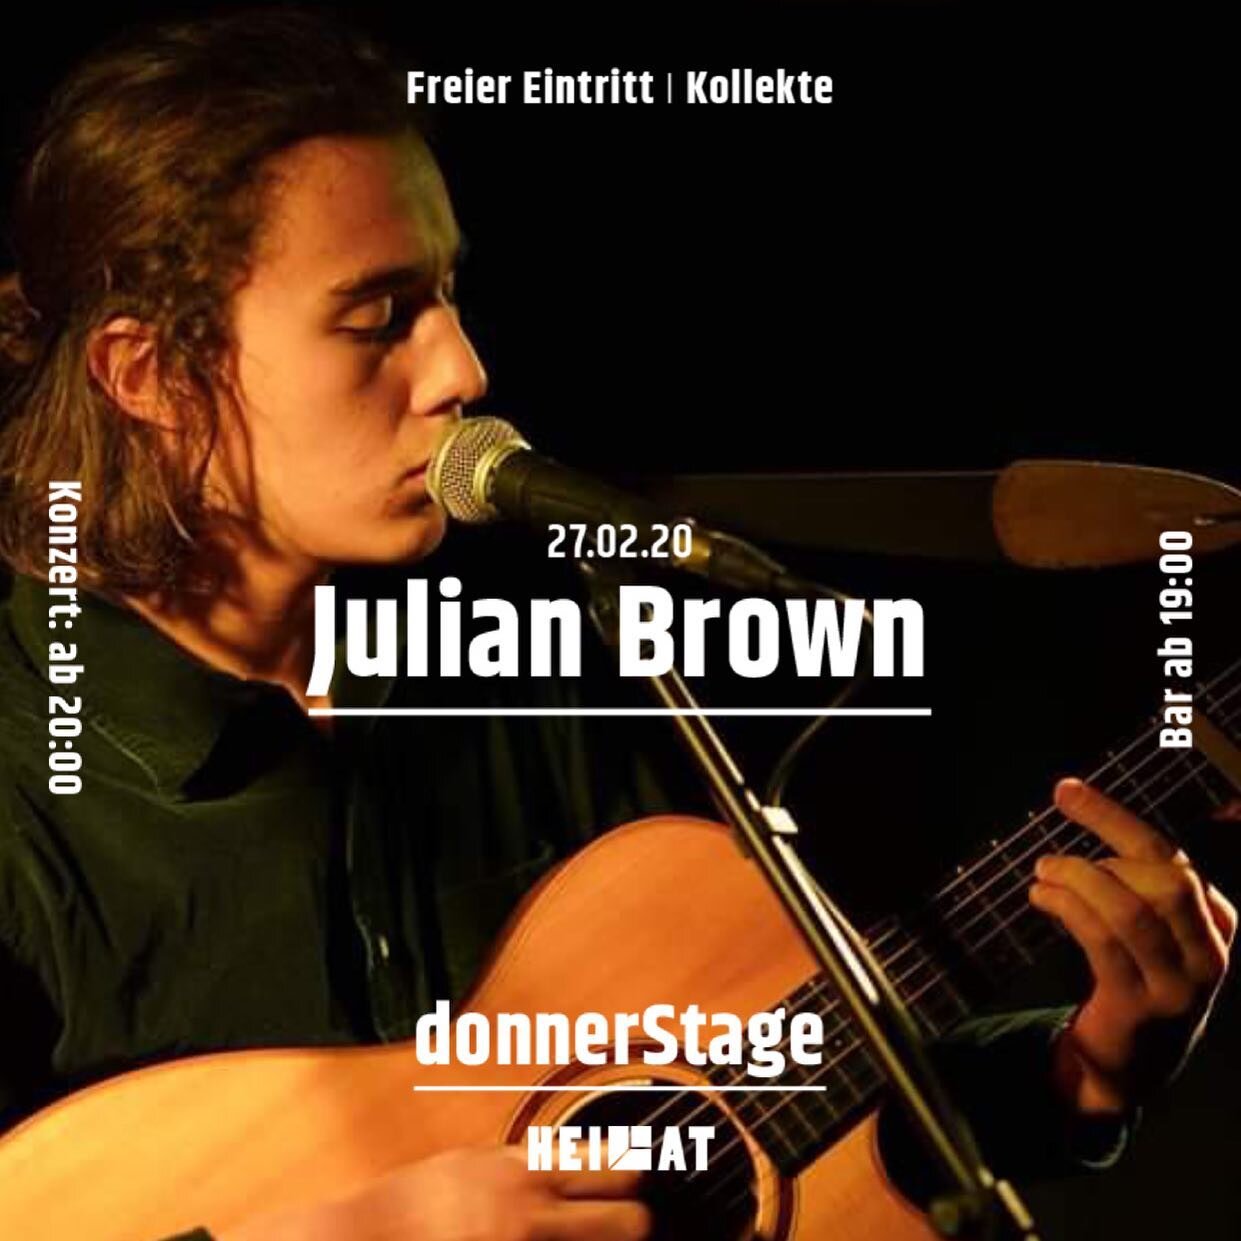 DonnerStage Live und Heimat Basel pr&auml;sentieren
Julian Brown

Julian Brown ist ein Singer/Songwriter aus Bern. Mit Gitarre, seiner Stimme und einem Loop-Pedal pr&auml;sentiert er seine Eigenkompositionen, die von Liebe, Abschied und Aufbruch erz&